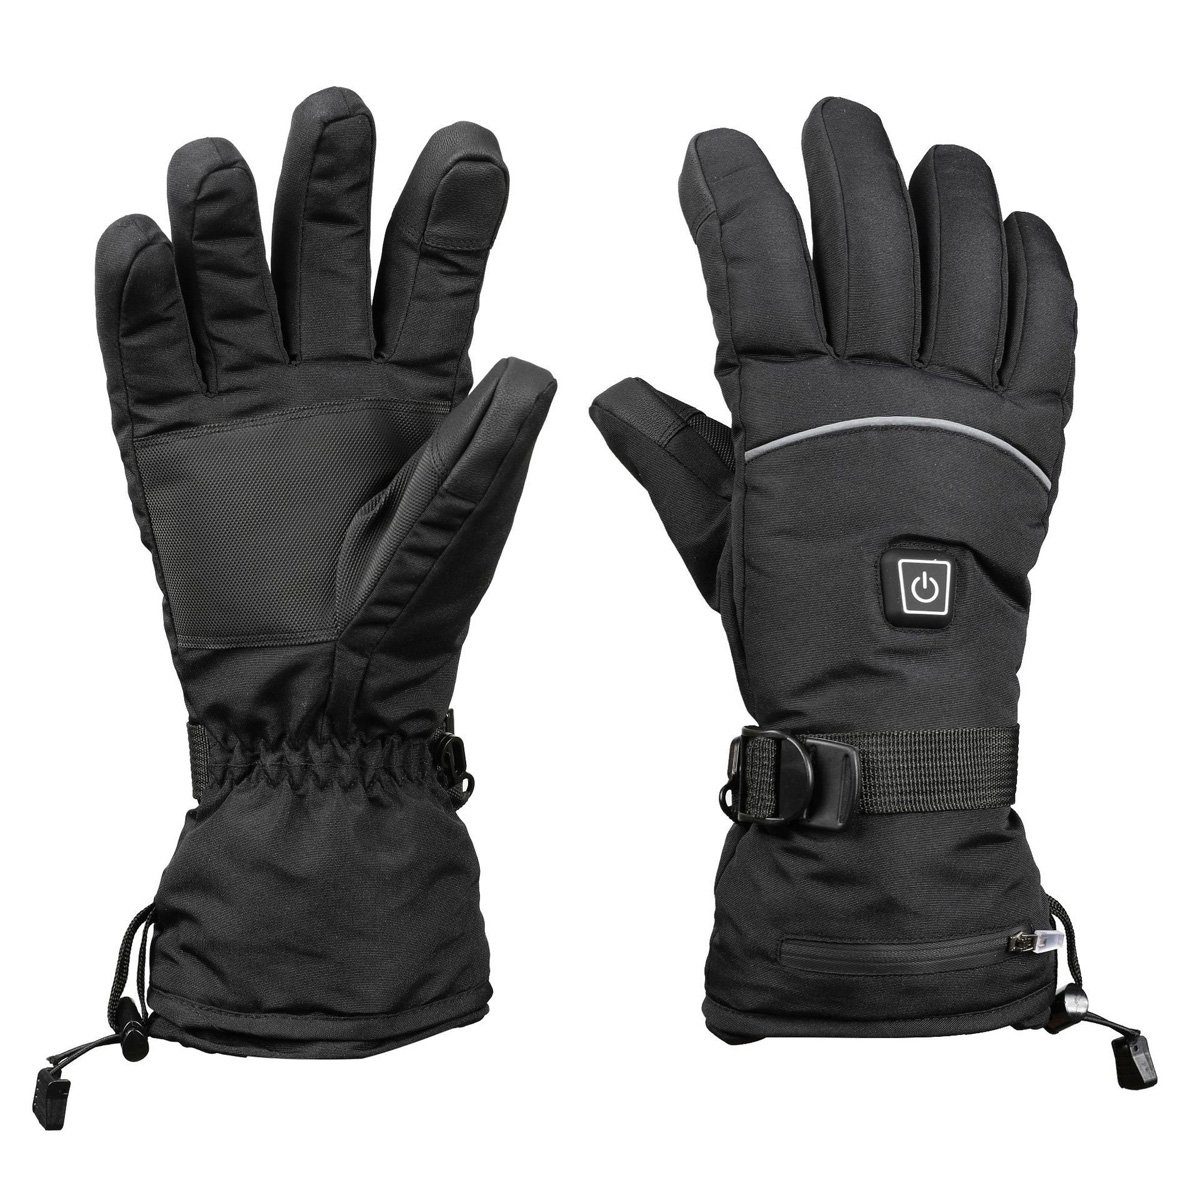 DOPWii Fahrradhandschuhe Beheizte Handschuhe,Wasserdicht,Winddicht,3 stufige Temperaturregelung